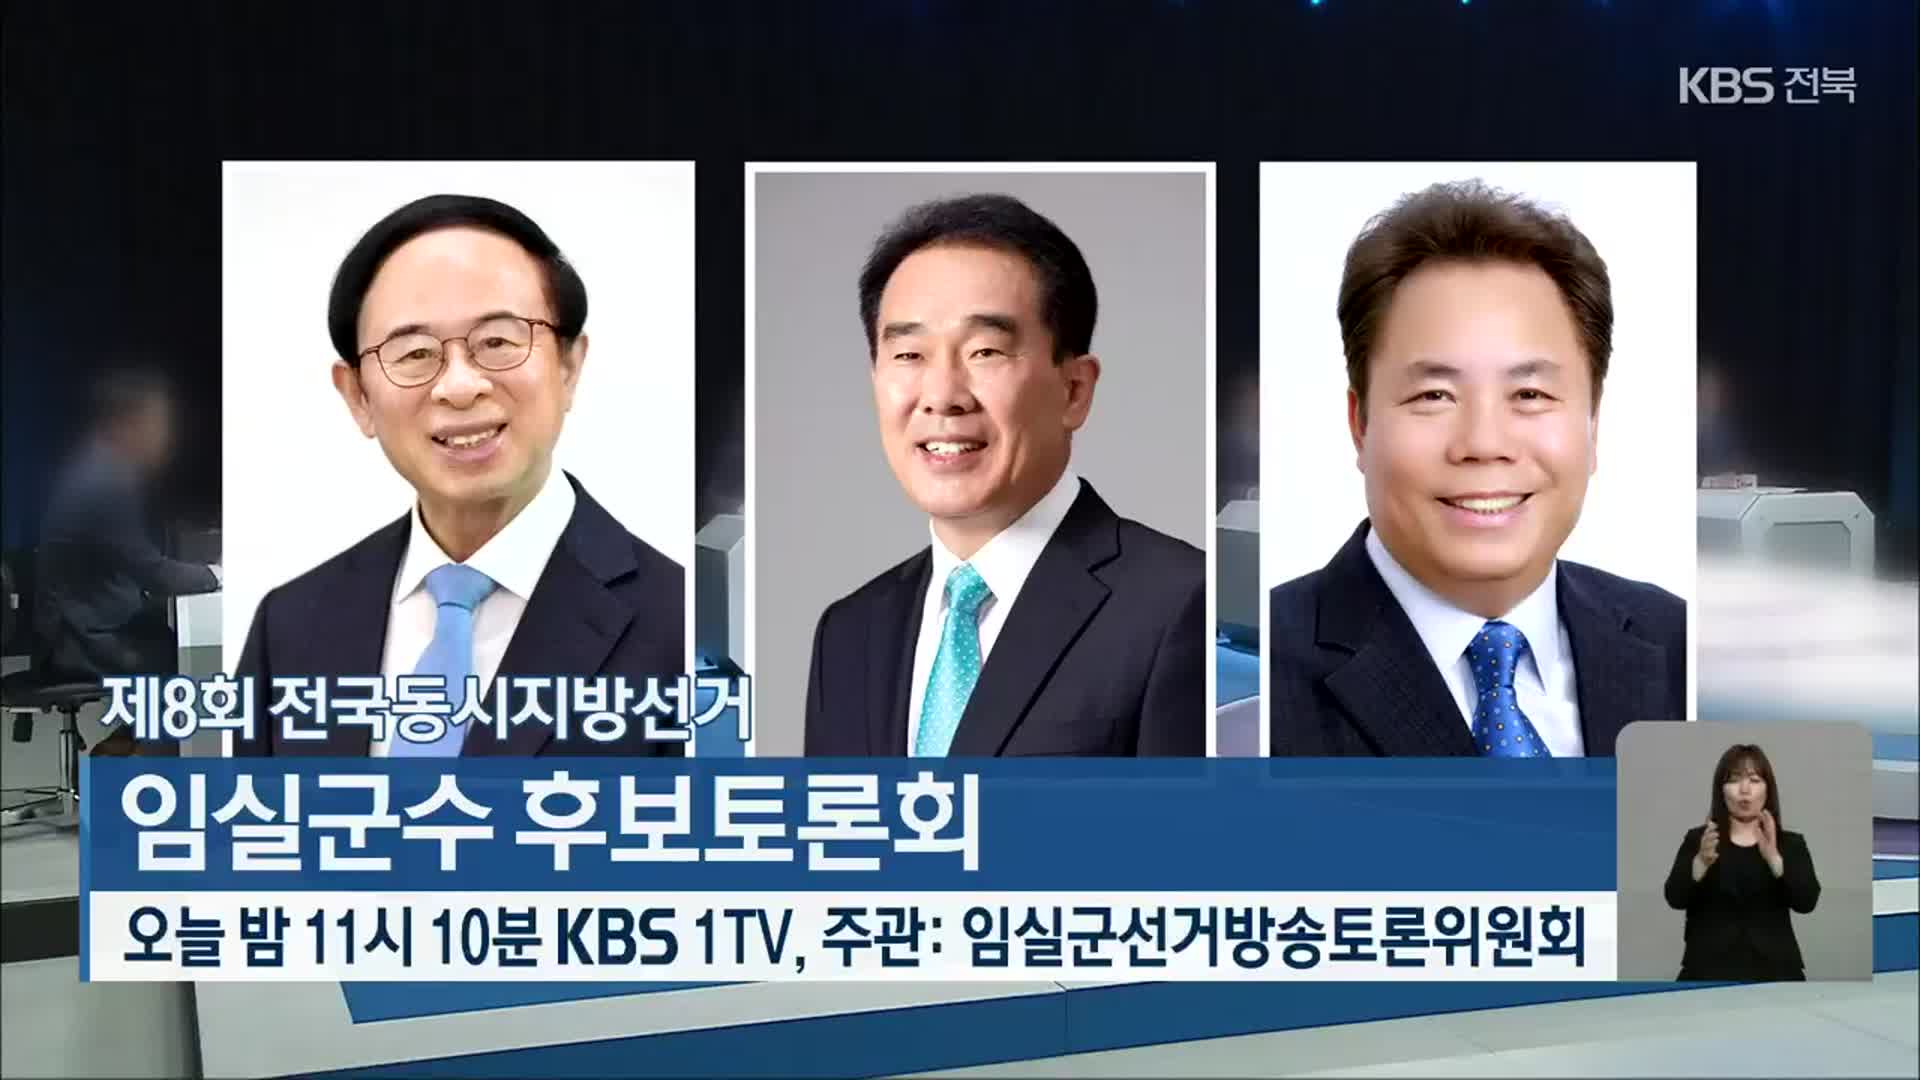 제8회 전국동시지방선거 임실군수 후보토론회 오늘밤 11시 10분 KBS 1TV